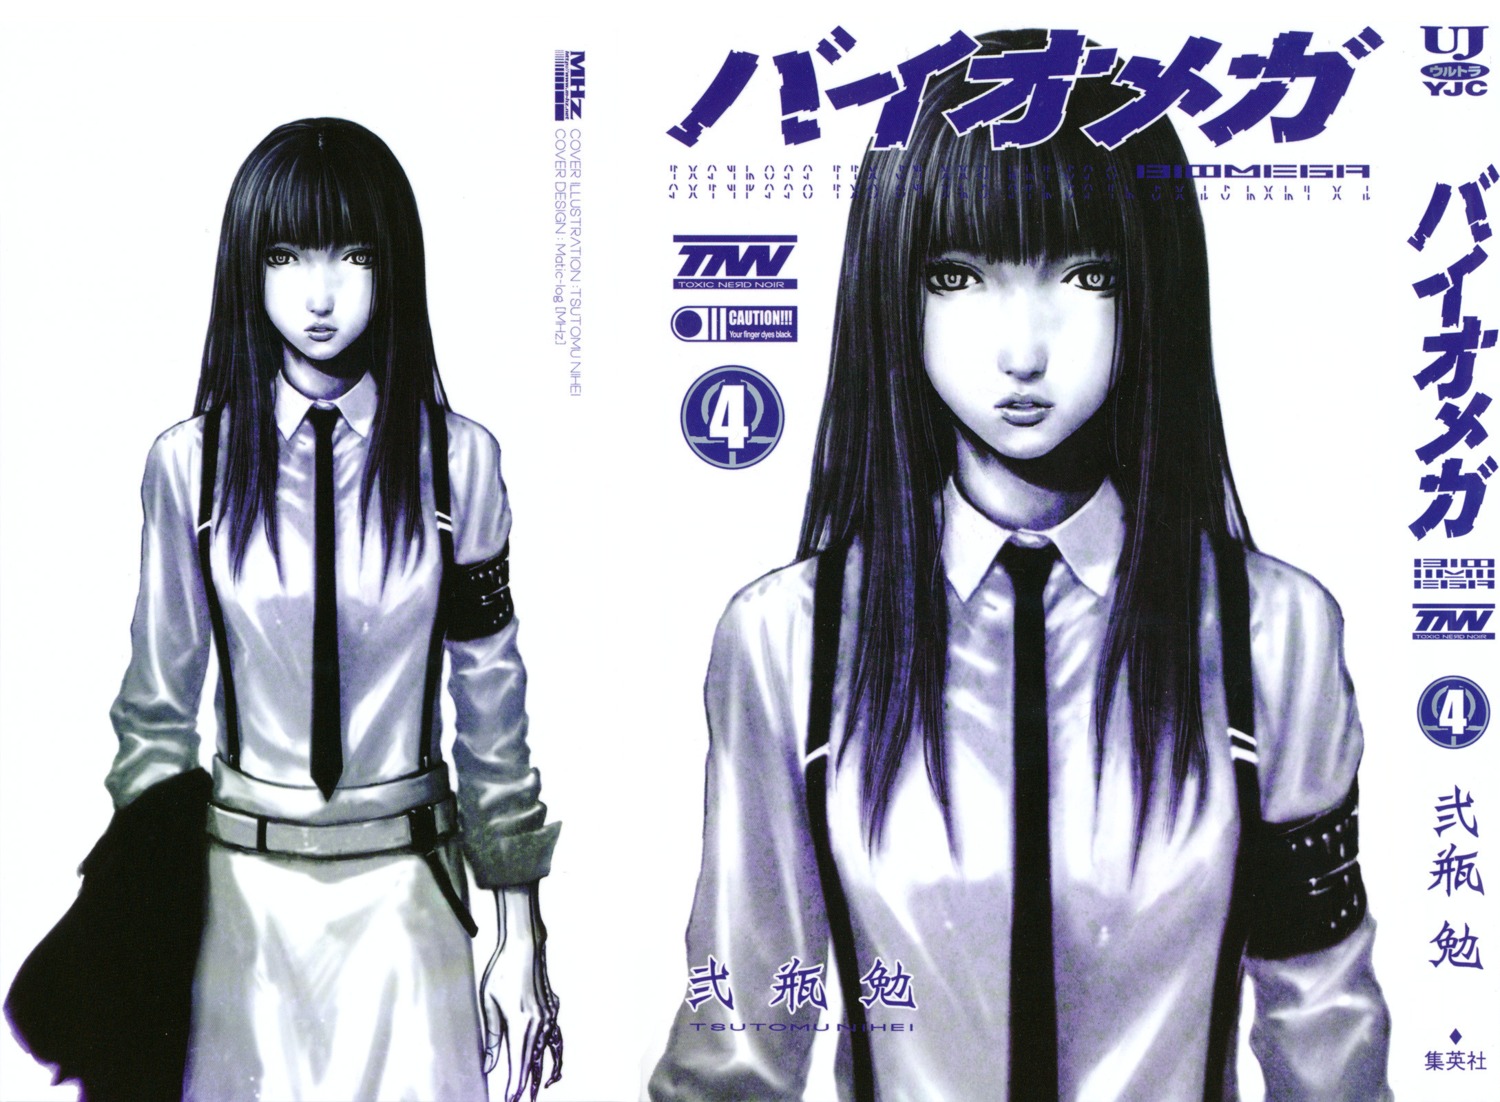 HILL: I Don't Like Manga, But I love BIOMEGA By Tsutomu Nihei - GeekWeek